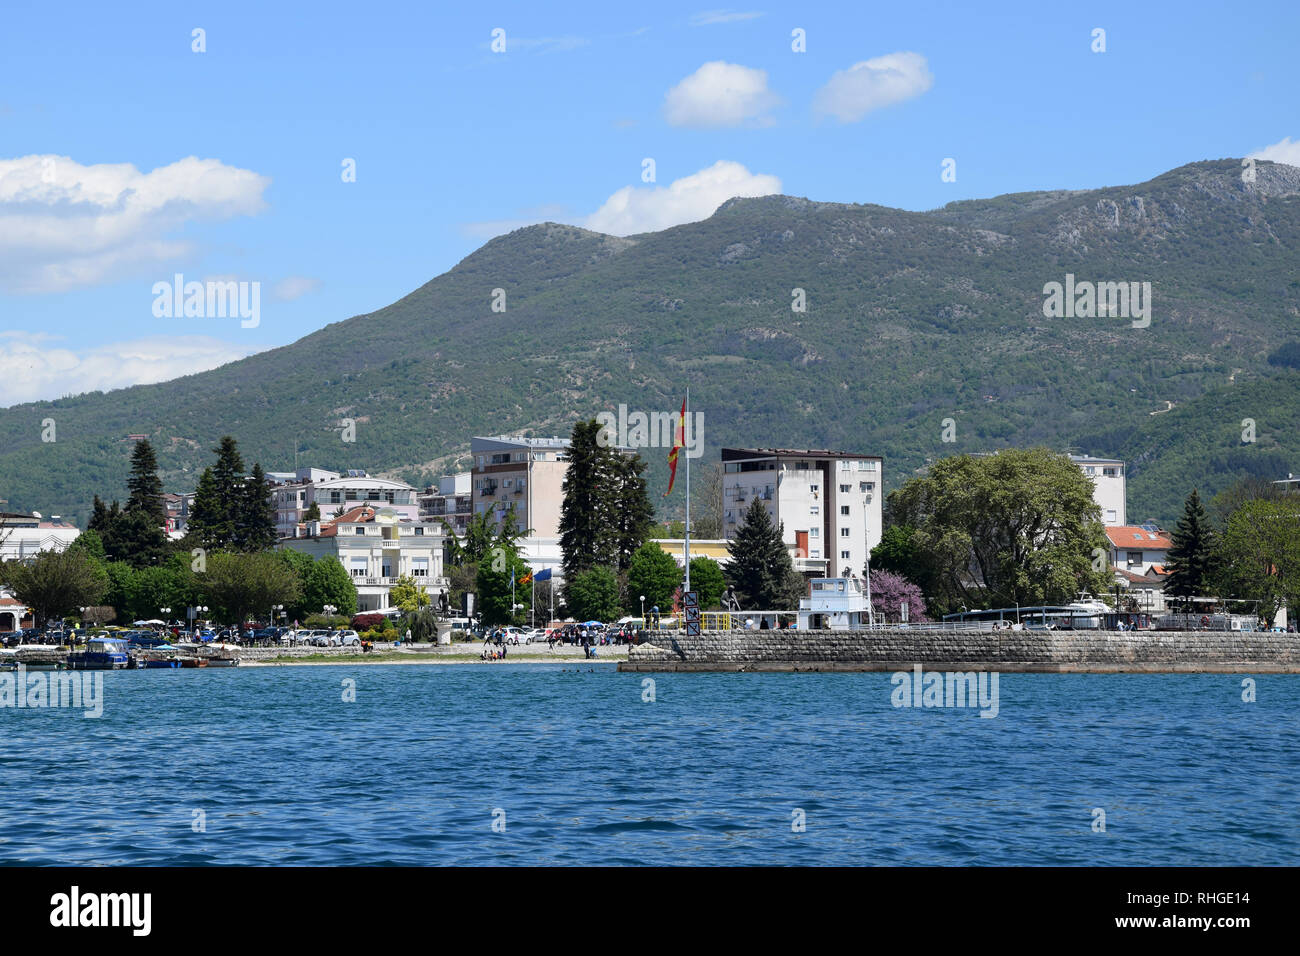 Puerto de la ciudad de Ohrid. Casco antiguo de Ohrid, cerca del lago costa. Macedonia. Foto de stock